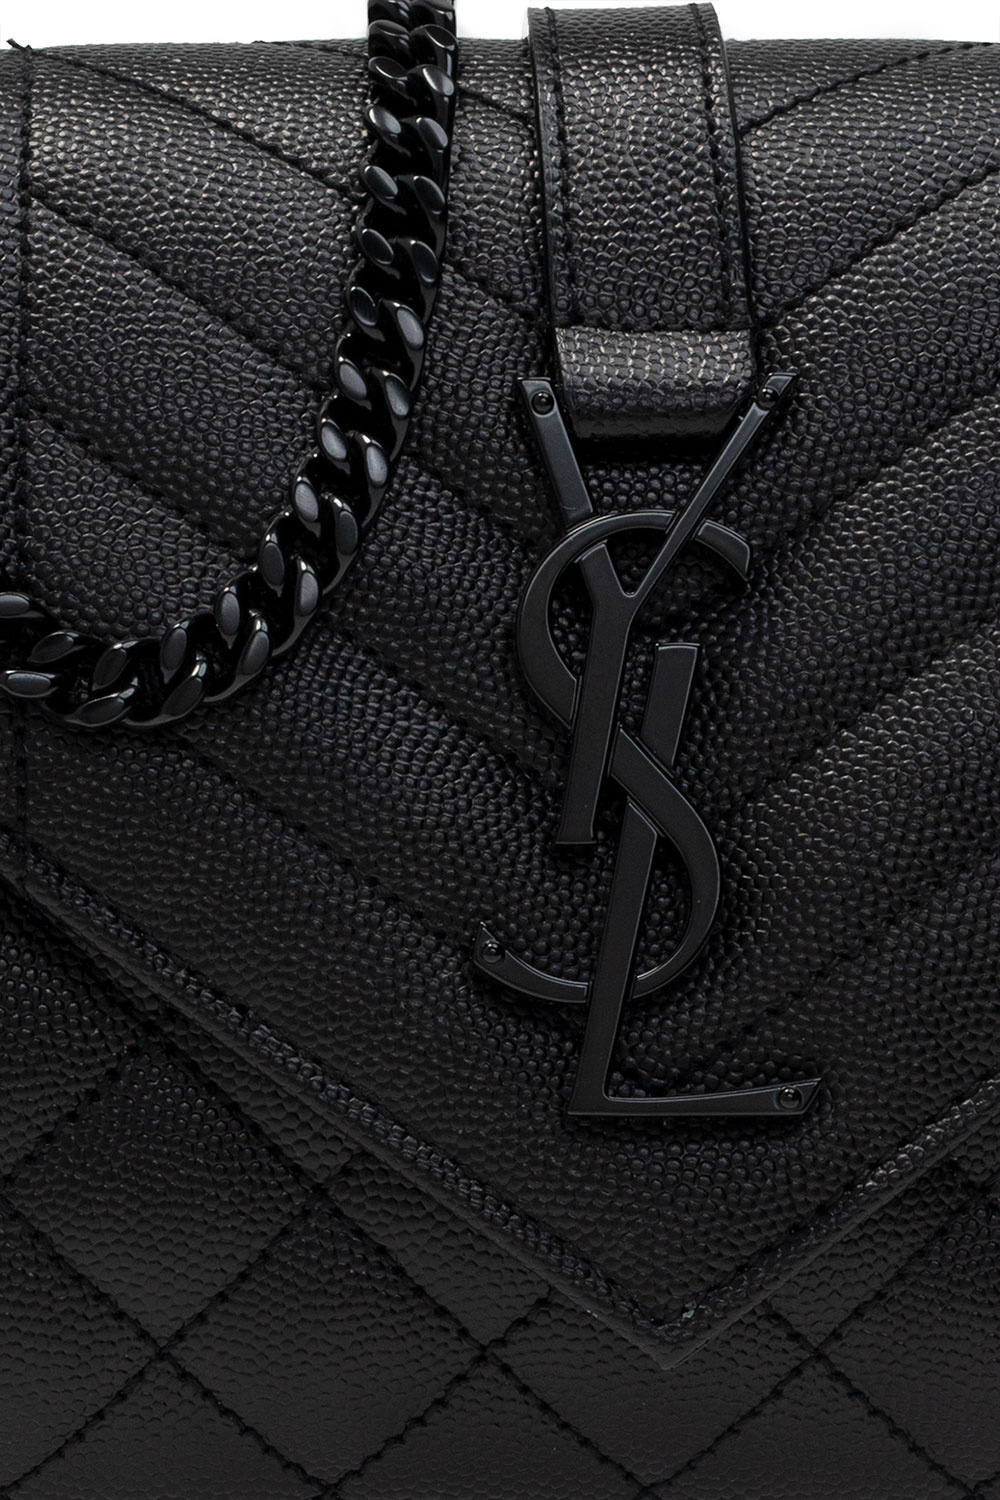 YVES SAINT LAURENT Envelope Leather Chain Shoulder Bag Black